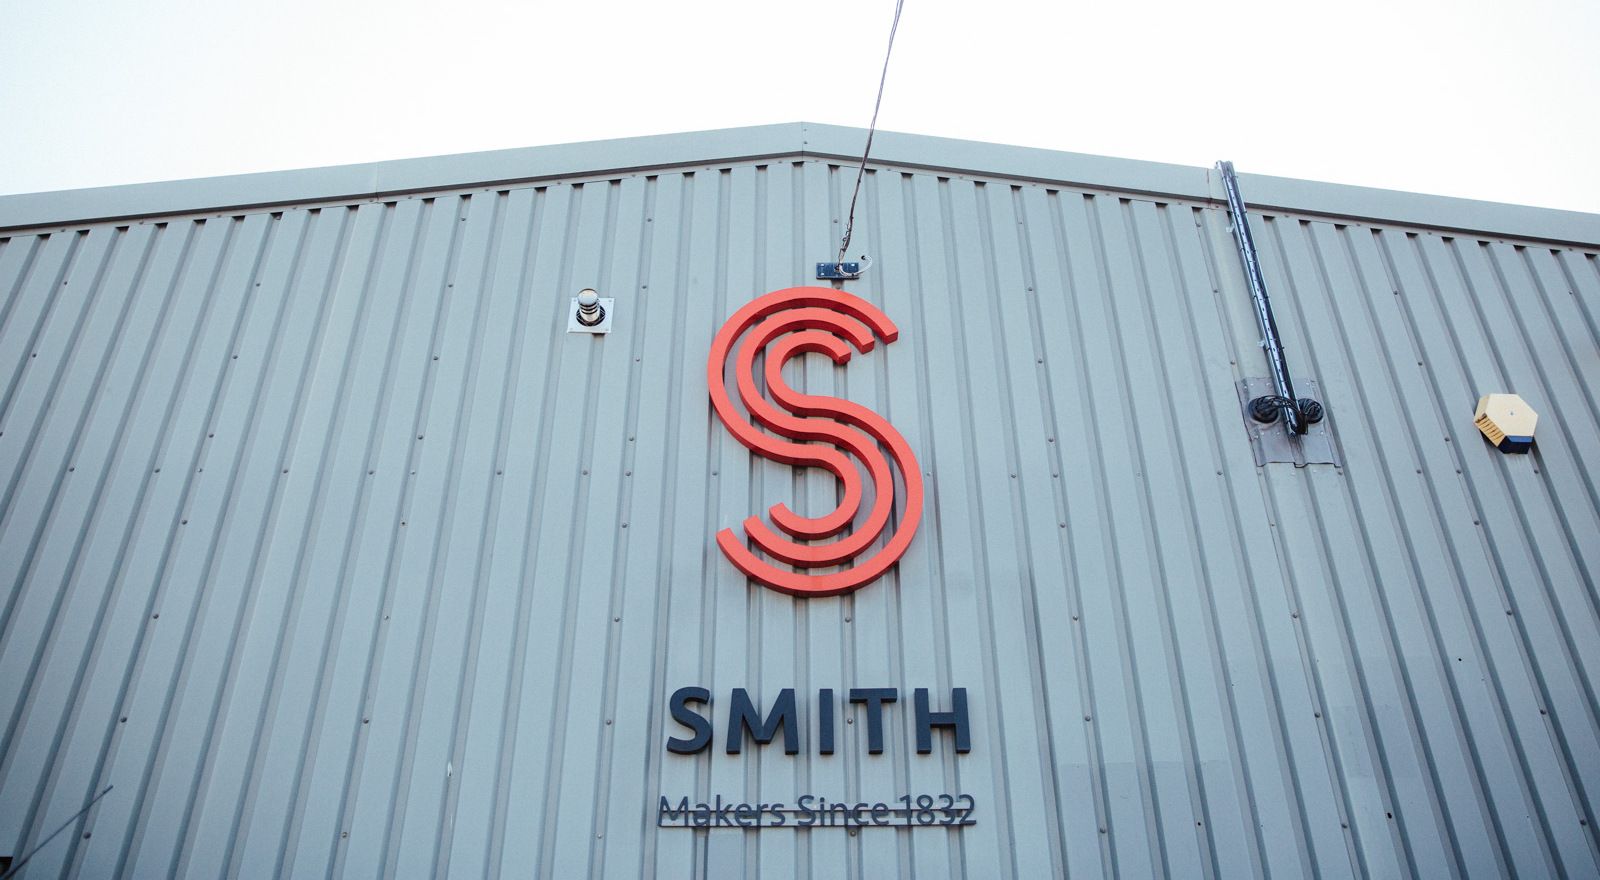 Smith Trade Signage fabrication unit